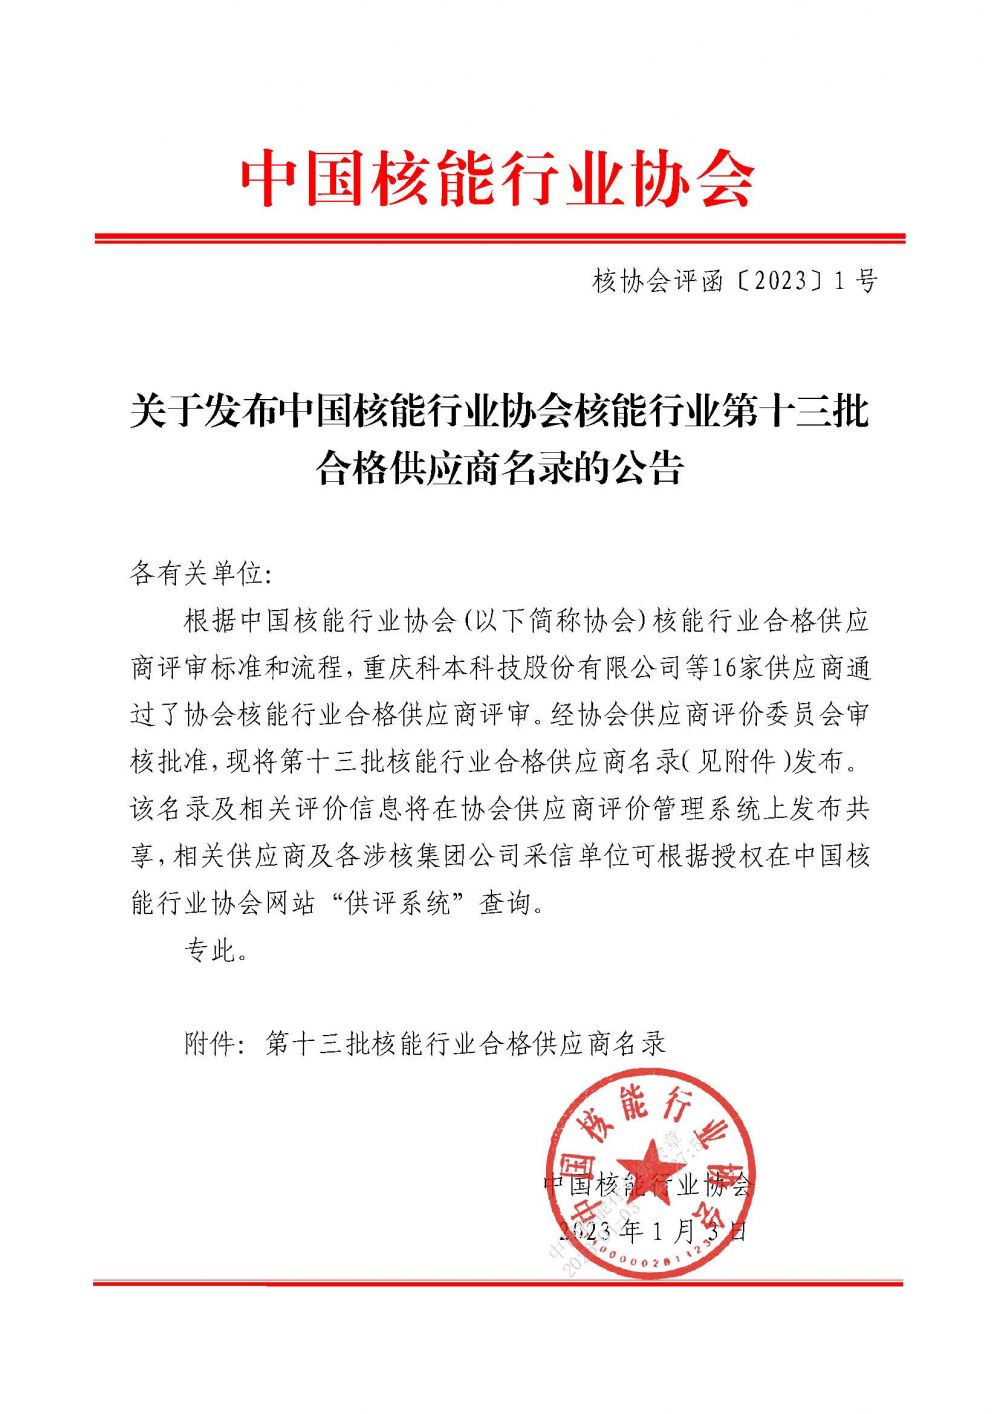 关于发布中国核能行业协会核能行业第十三批合格供应商名录的公告_页面_1.jpg